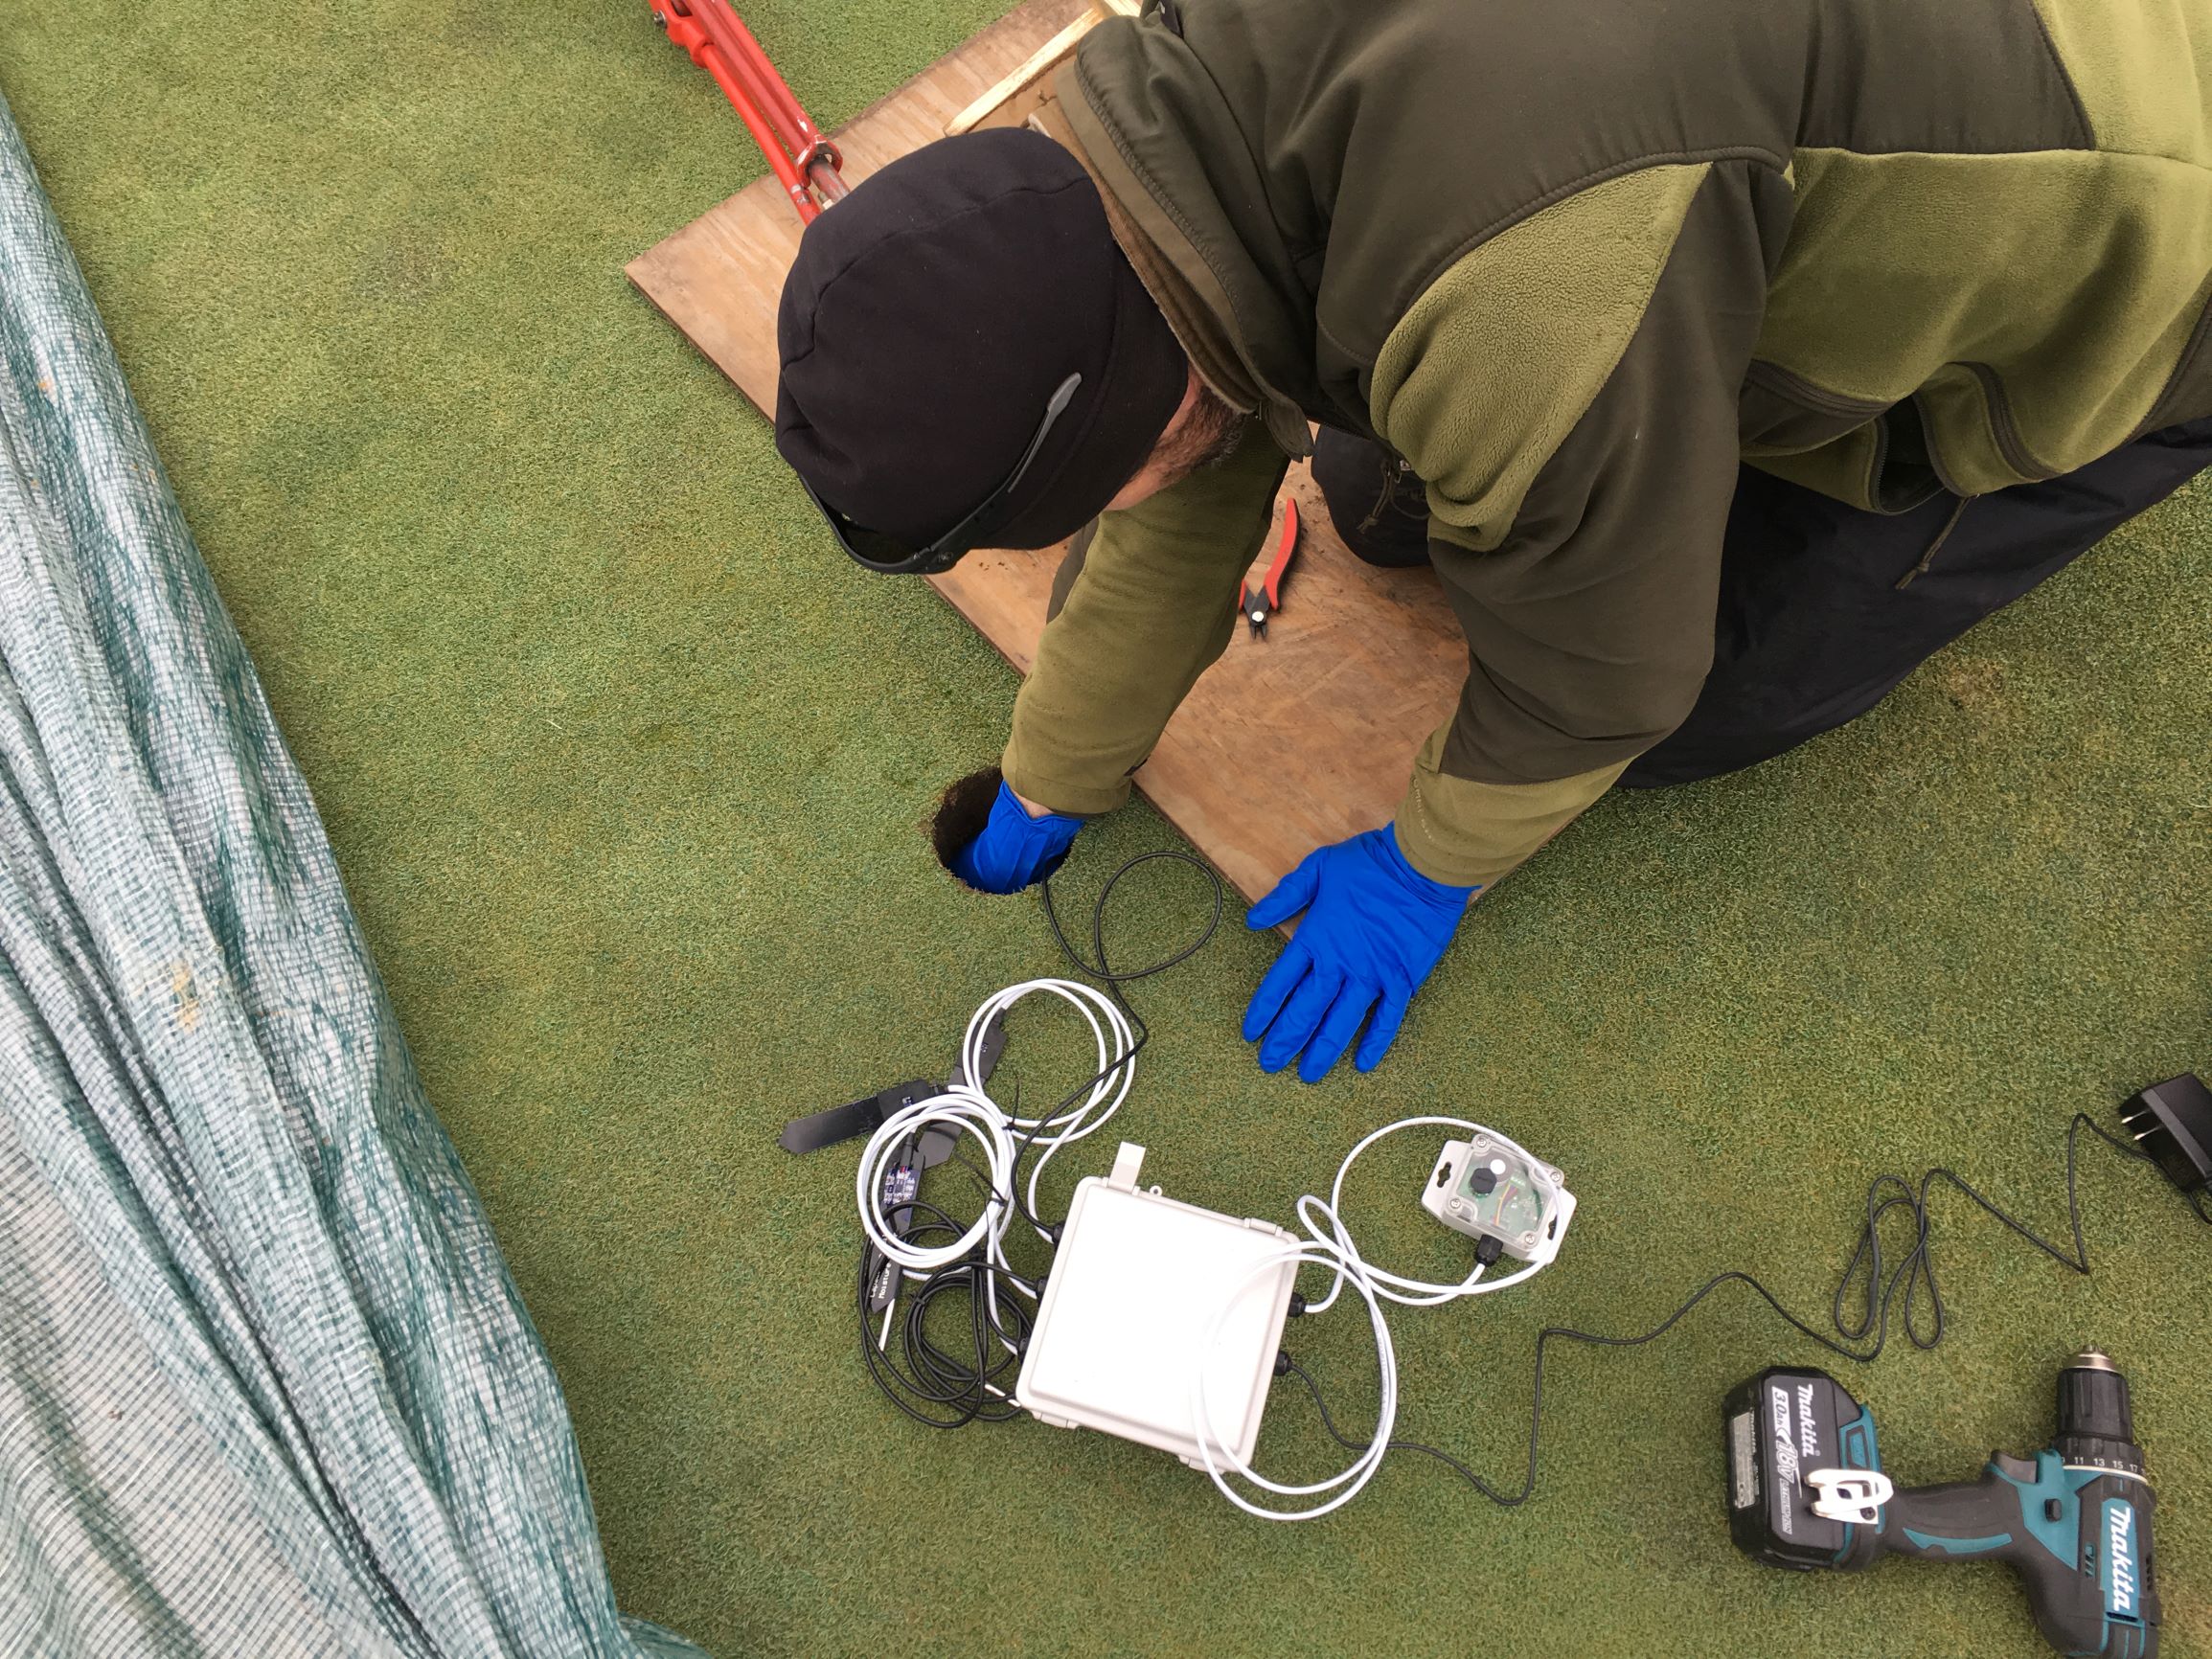 man installing sensor equipment on a golf course green